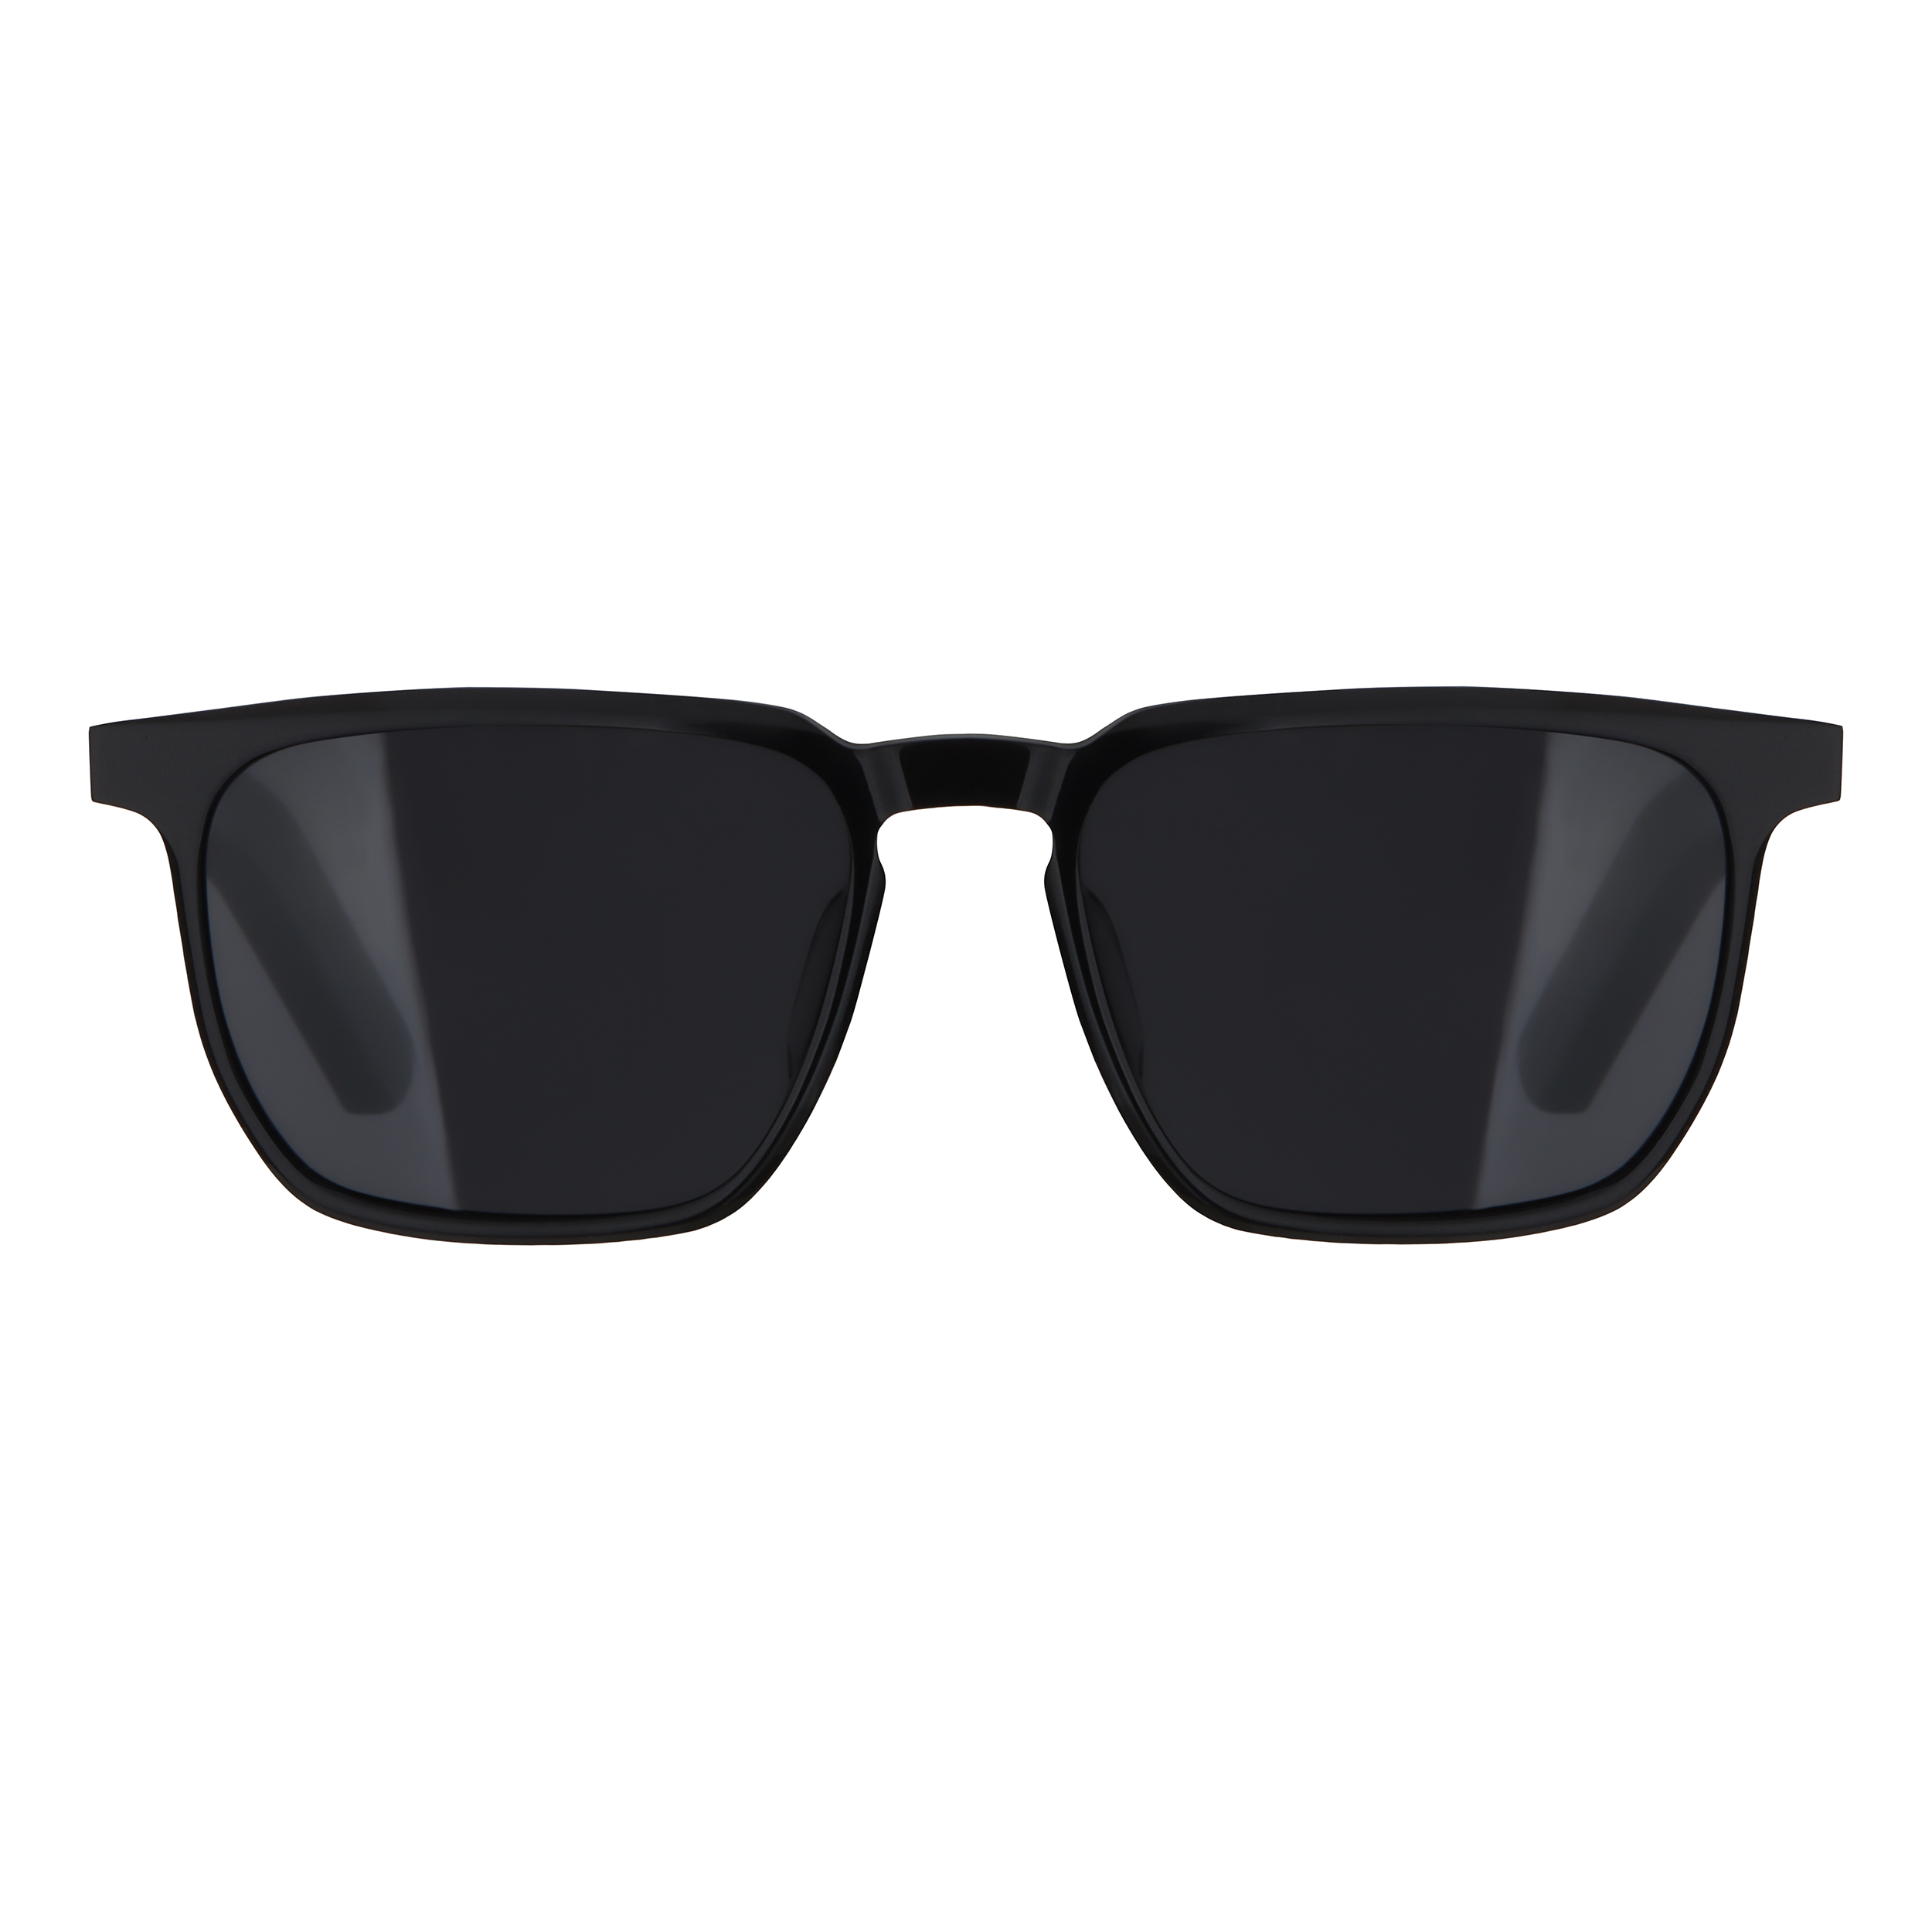 نکته خرید - قیمت روز عینک هوشمند طرح Legacy مدل E10-09 خرید